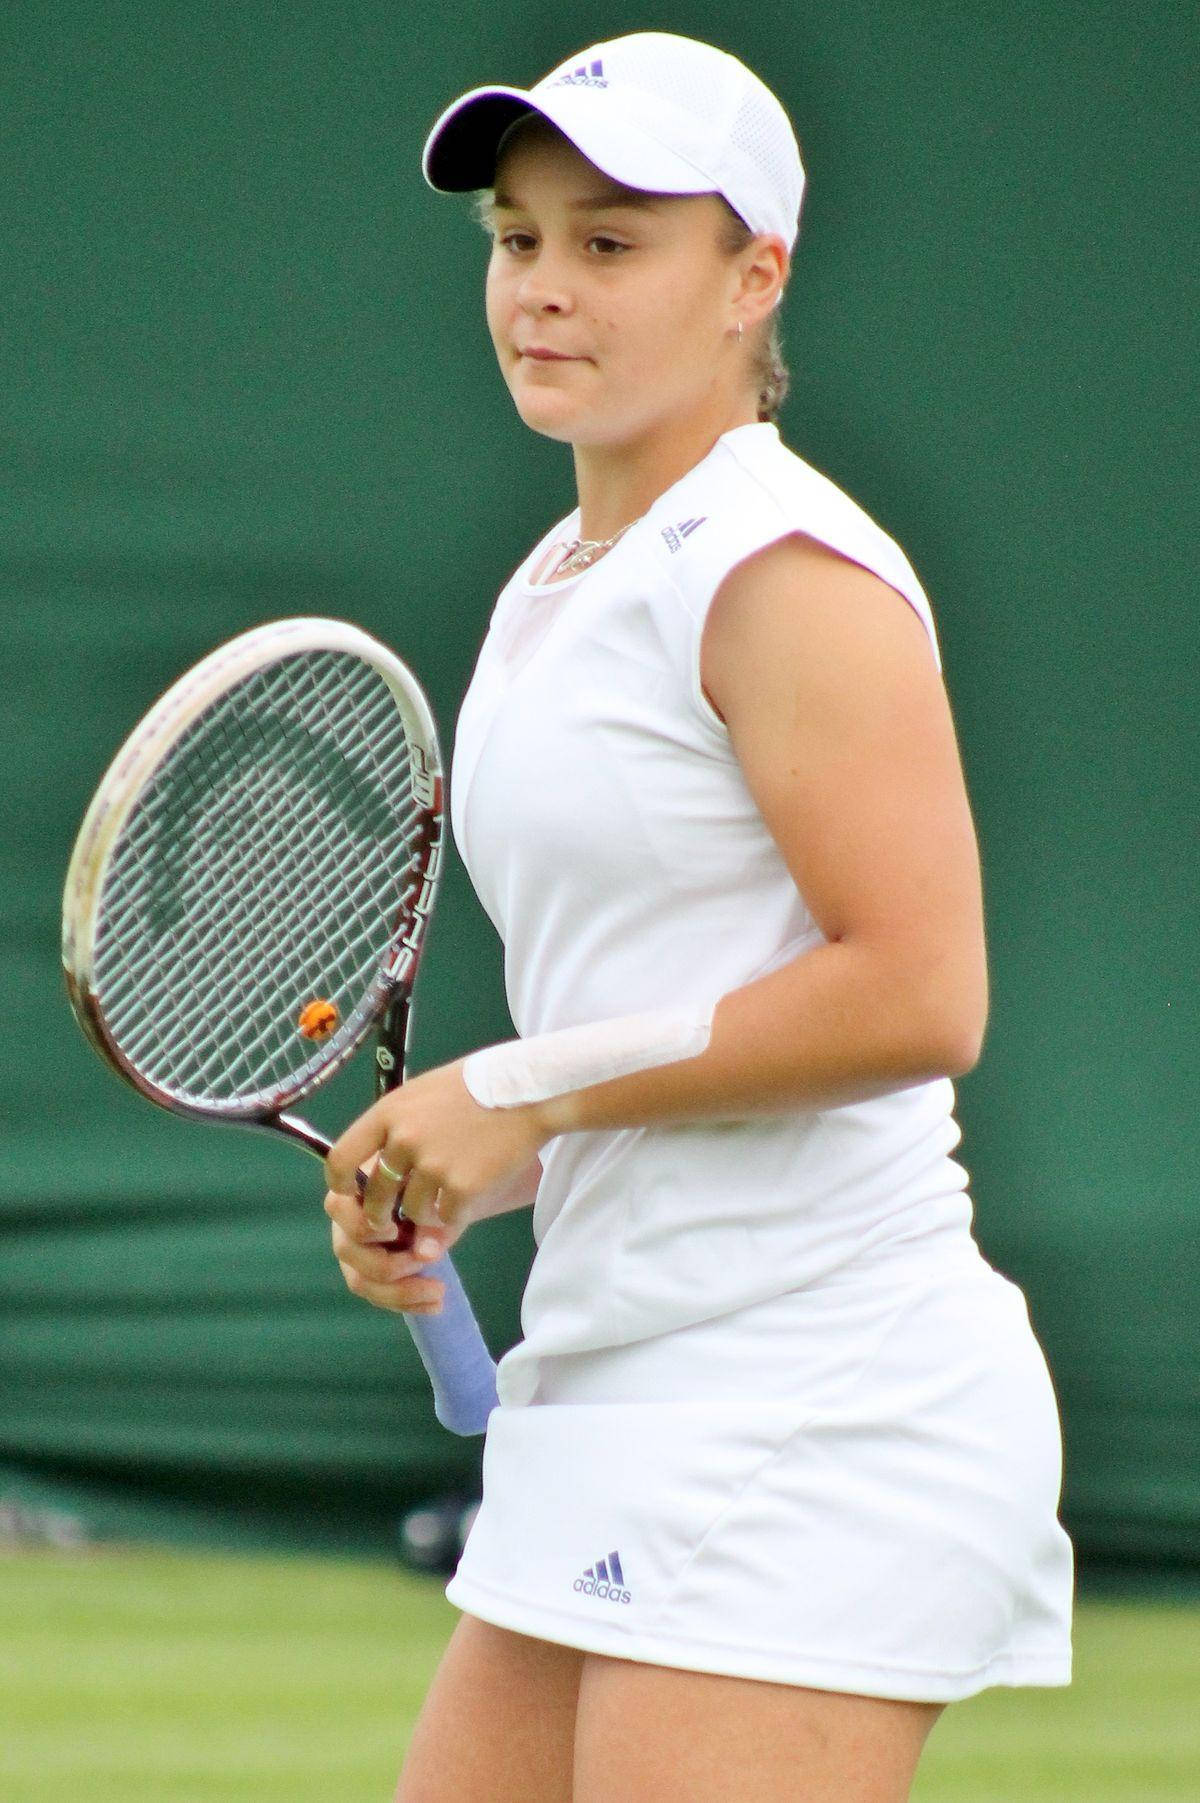 Ashleigh Barty bærer alt hvidt, mens hun spiller tennis, og viser hendes agilitet og nøjagtighed. Wallpaper